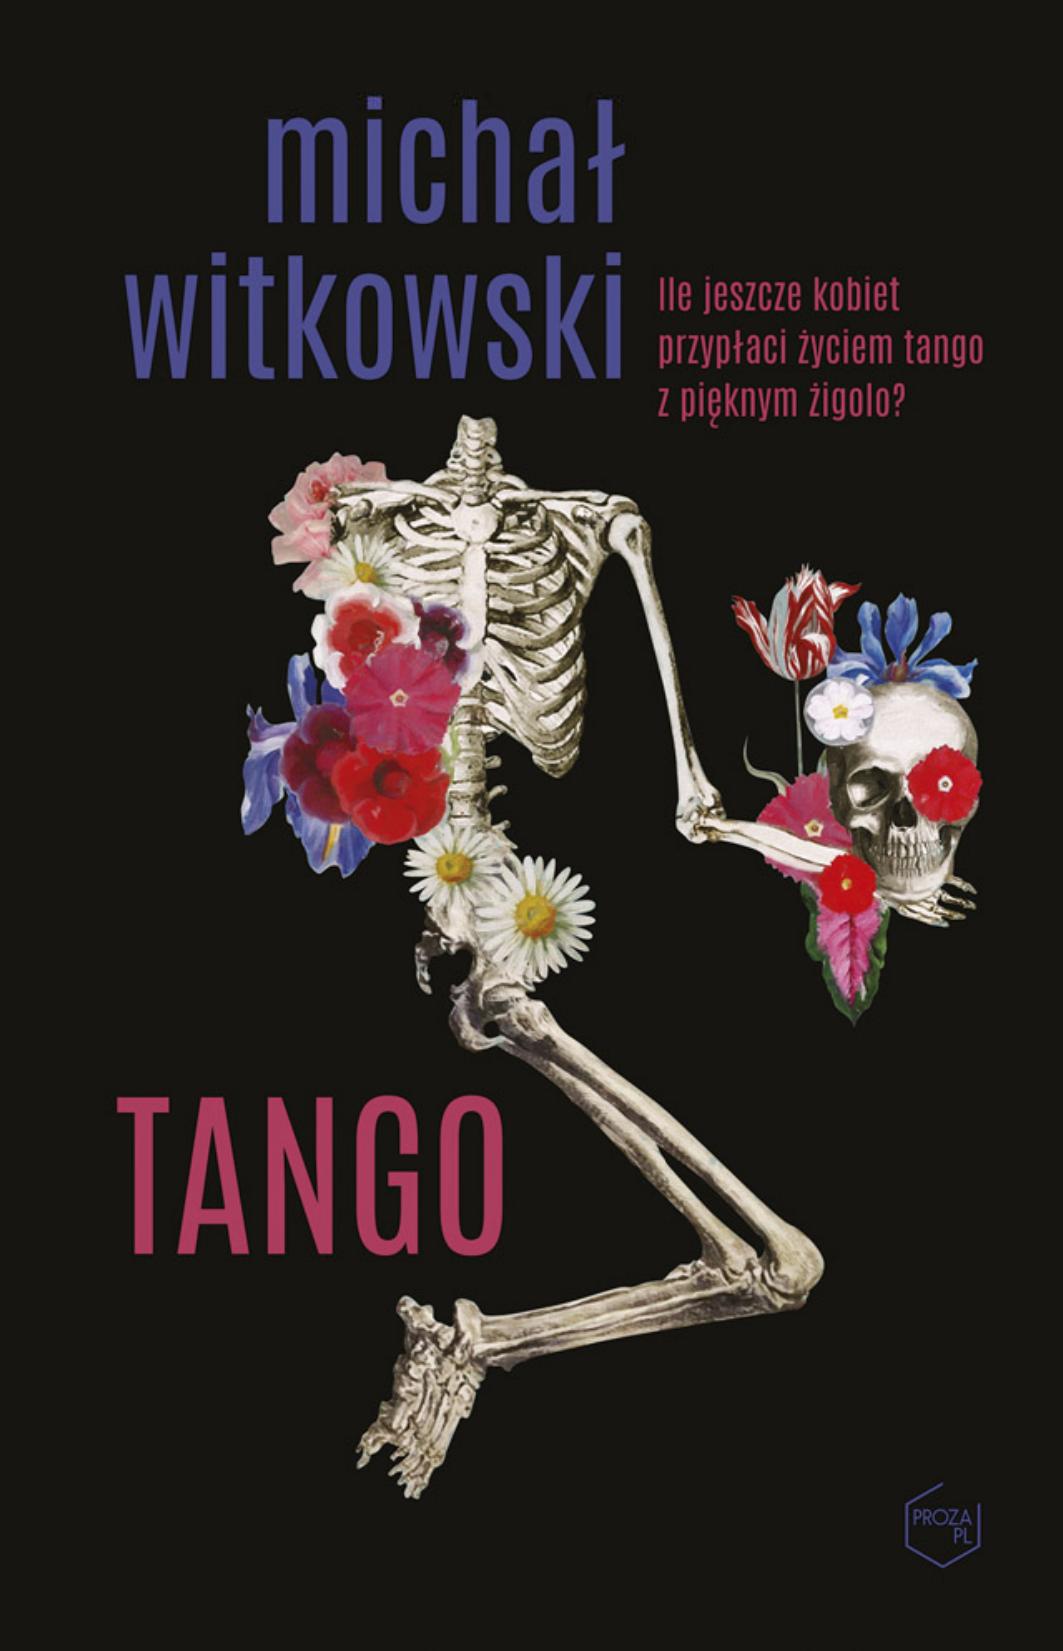 Tango by Michał Witkowski